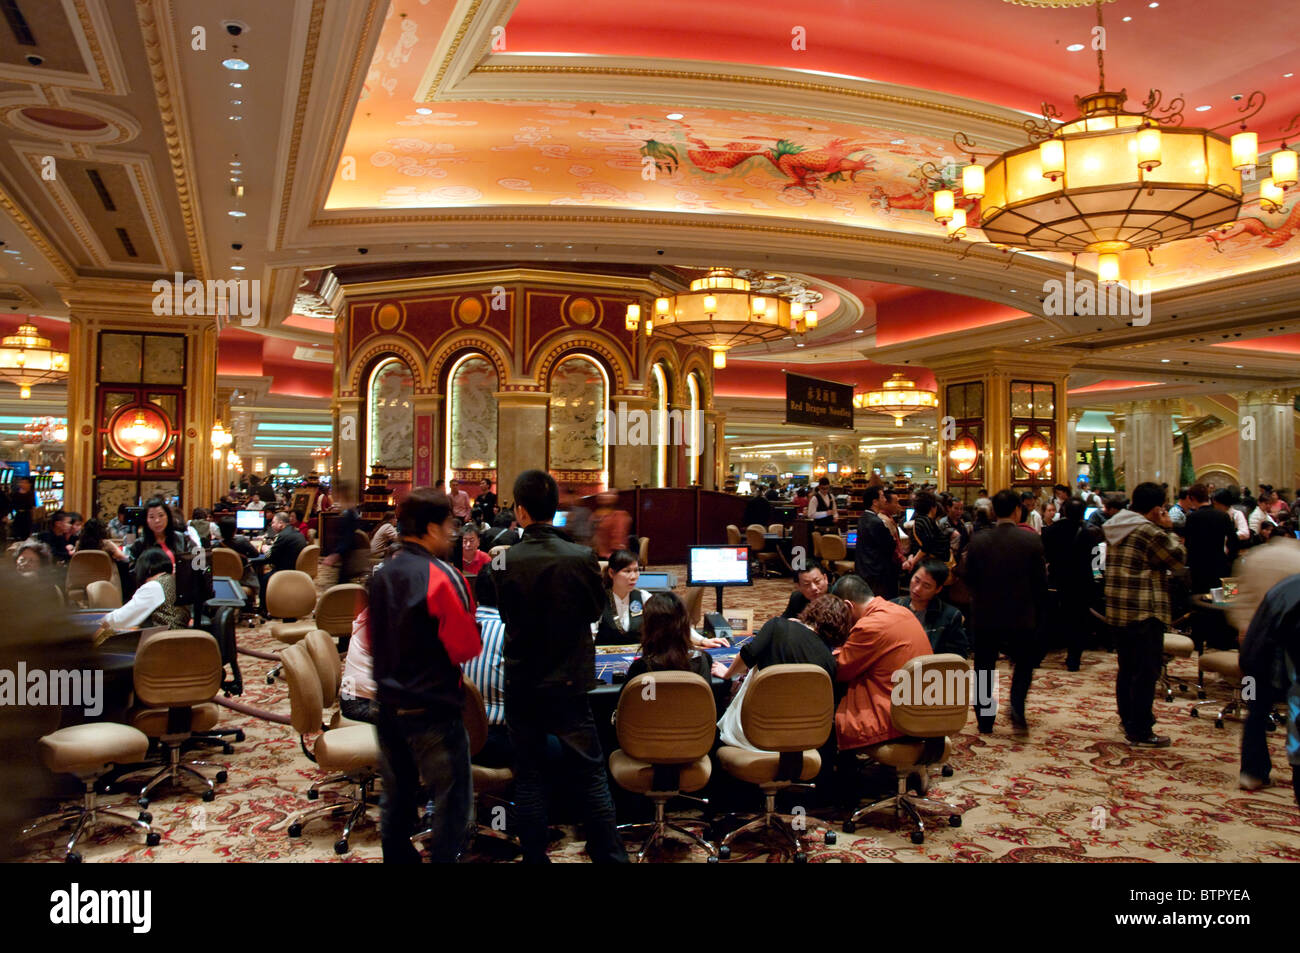 Asia, China, Macau, Venetian Casino Interior Stock Photo